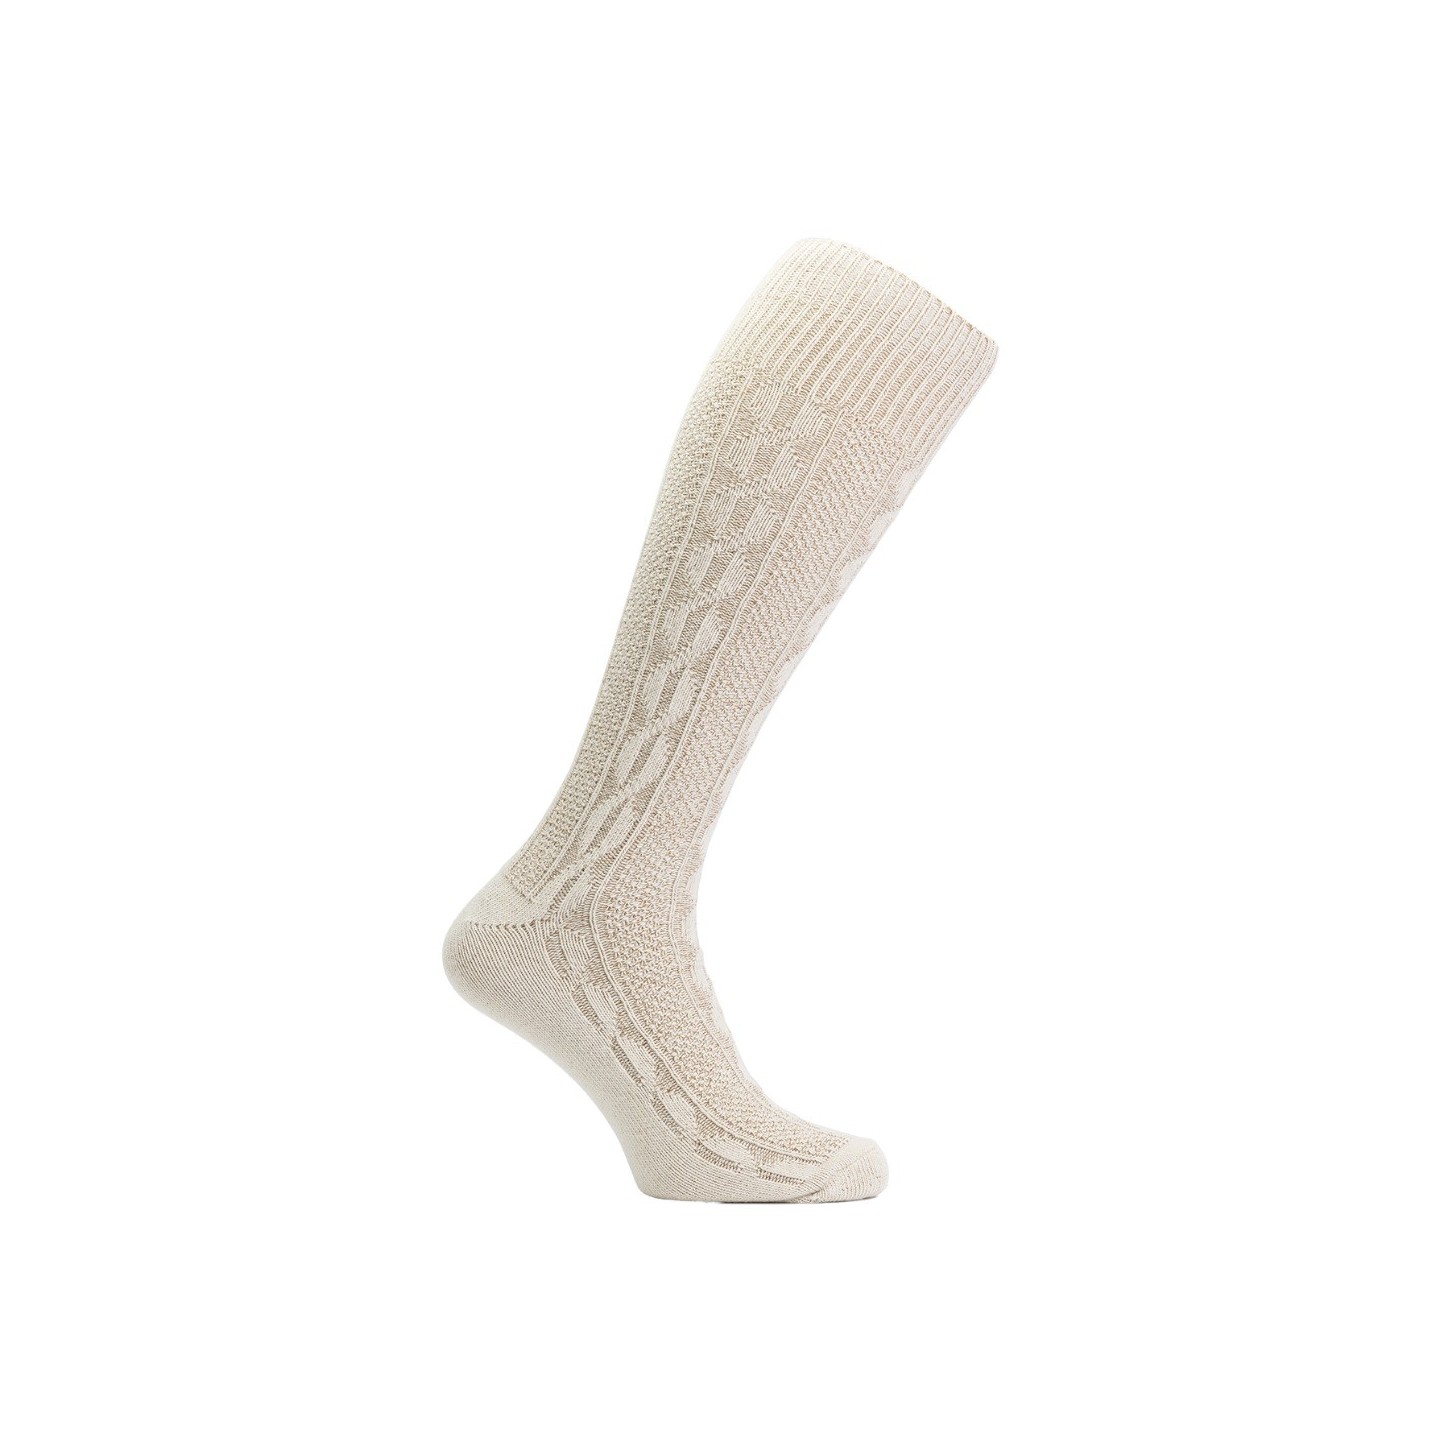 Tiroler kousen heren beige oktoberfest sokken